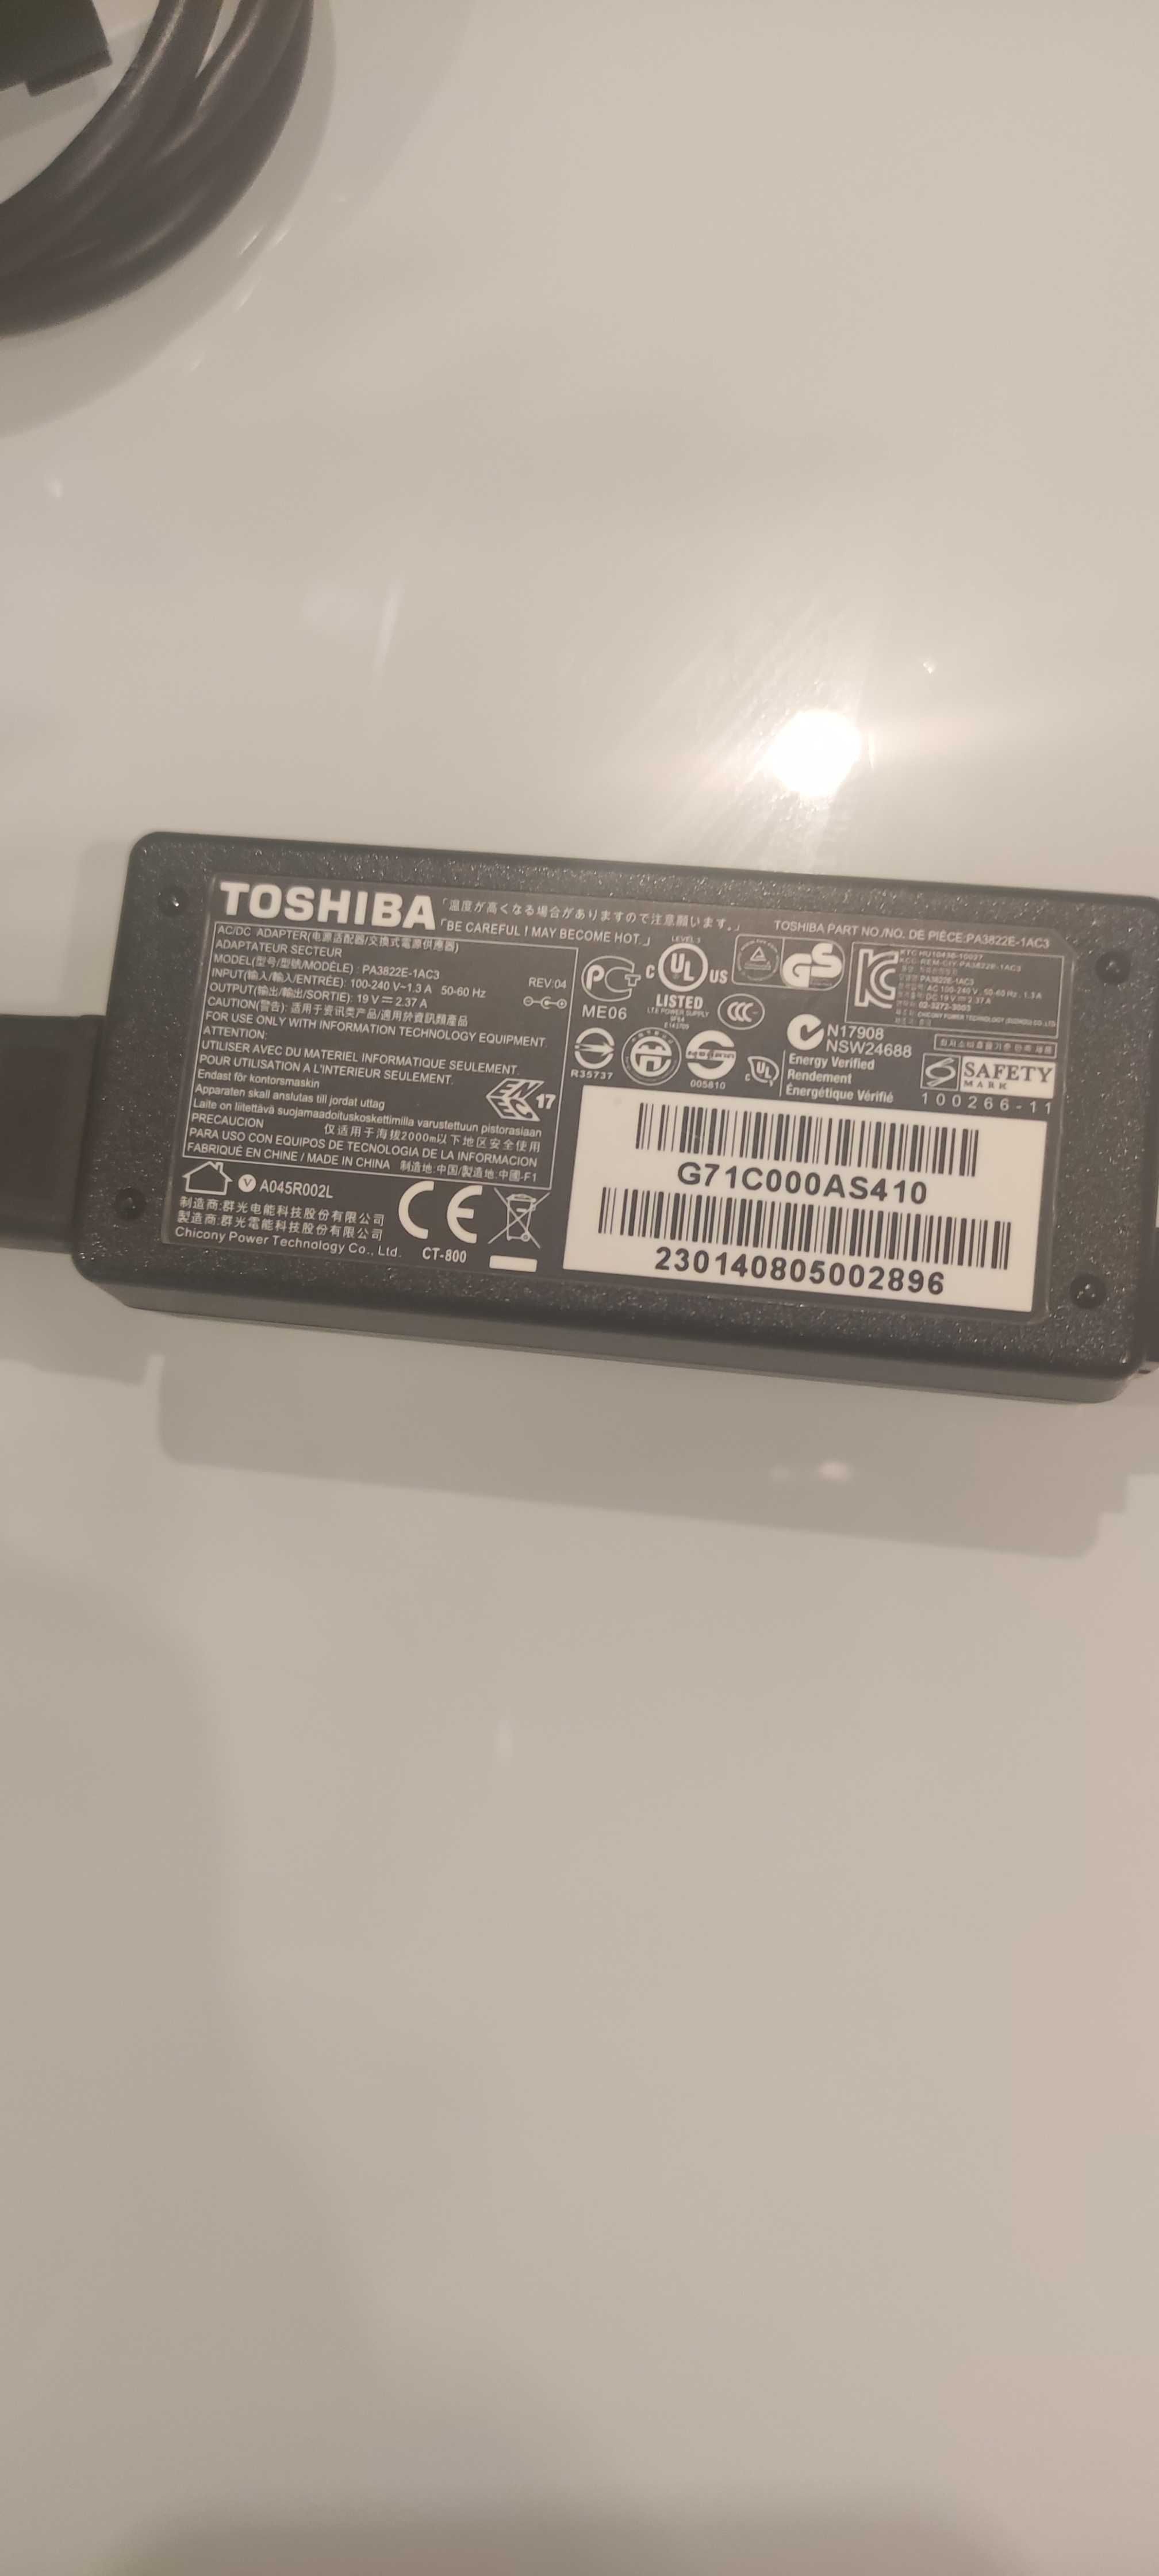 Toshiba Satellite Z30